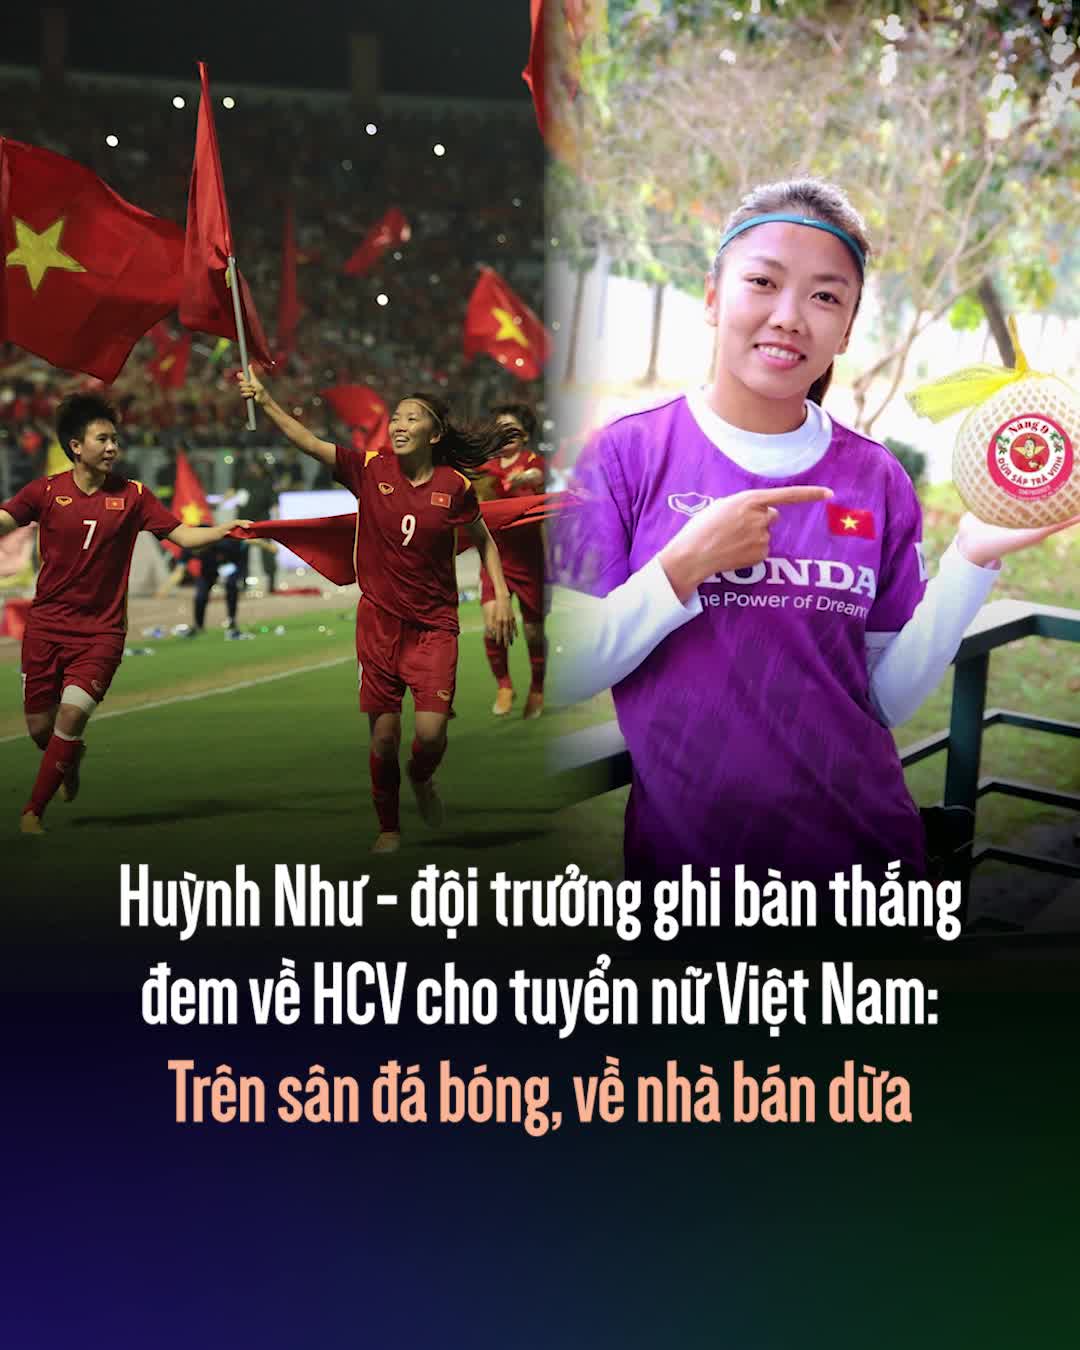 Huỳnh Như - đội trưởng ghi bàn thắng duy nhất đem về HCV cho tuyển nữ Việt Nam: Trên sân đá bóng, về nhà bán dừa